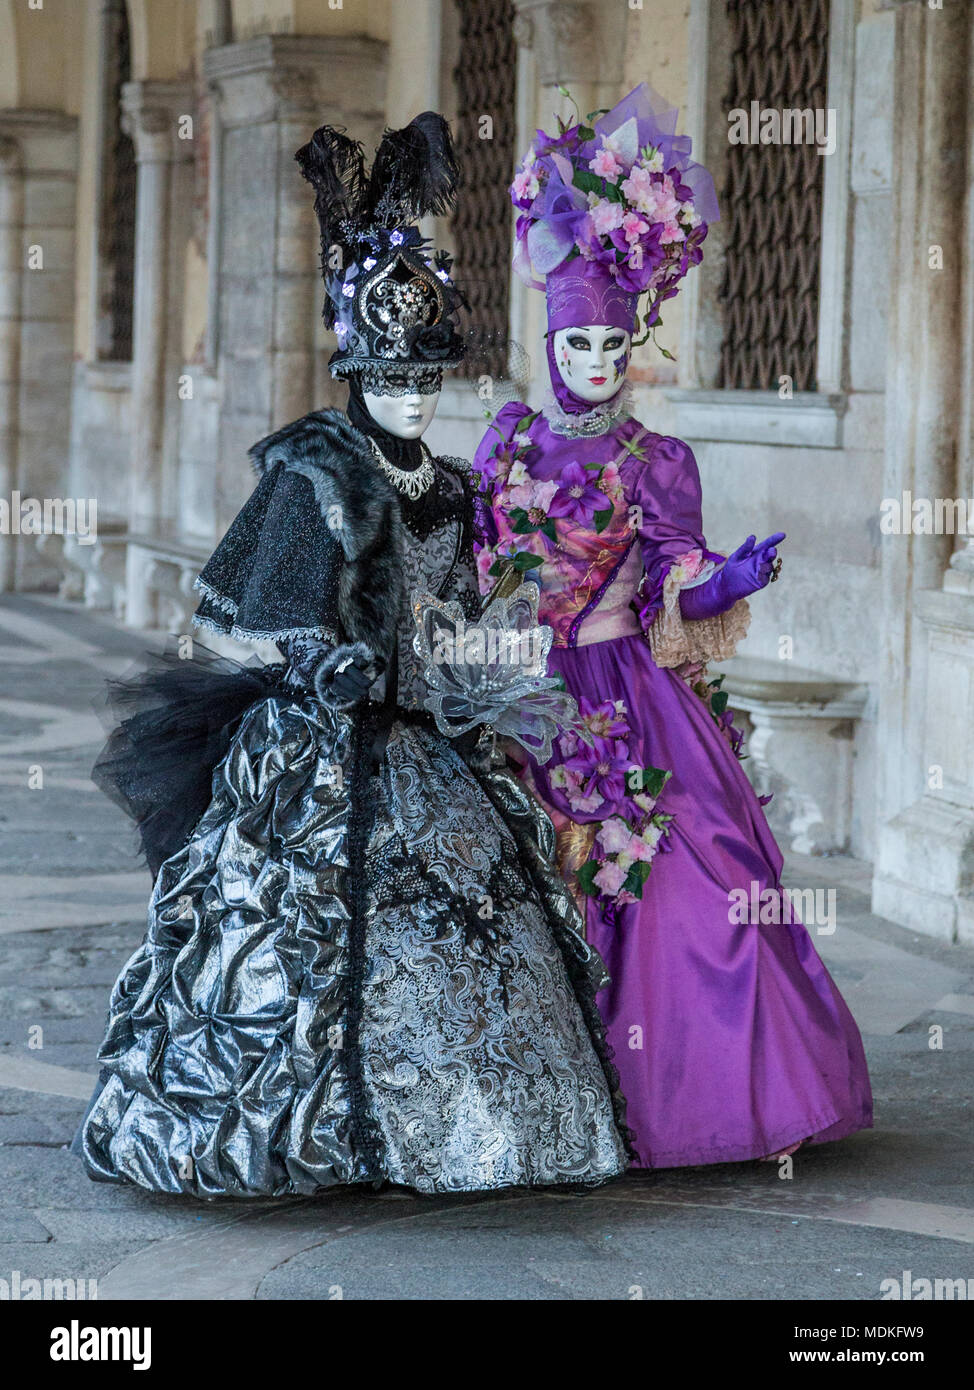 Carnaval de Venecia, trajes, máscaras, baile de máscaras, Febrero, Piazza  San Marco, la Plaza de San Marcos Fotografía de stock - Alamy